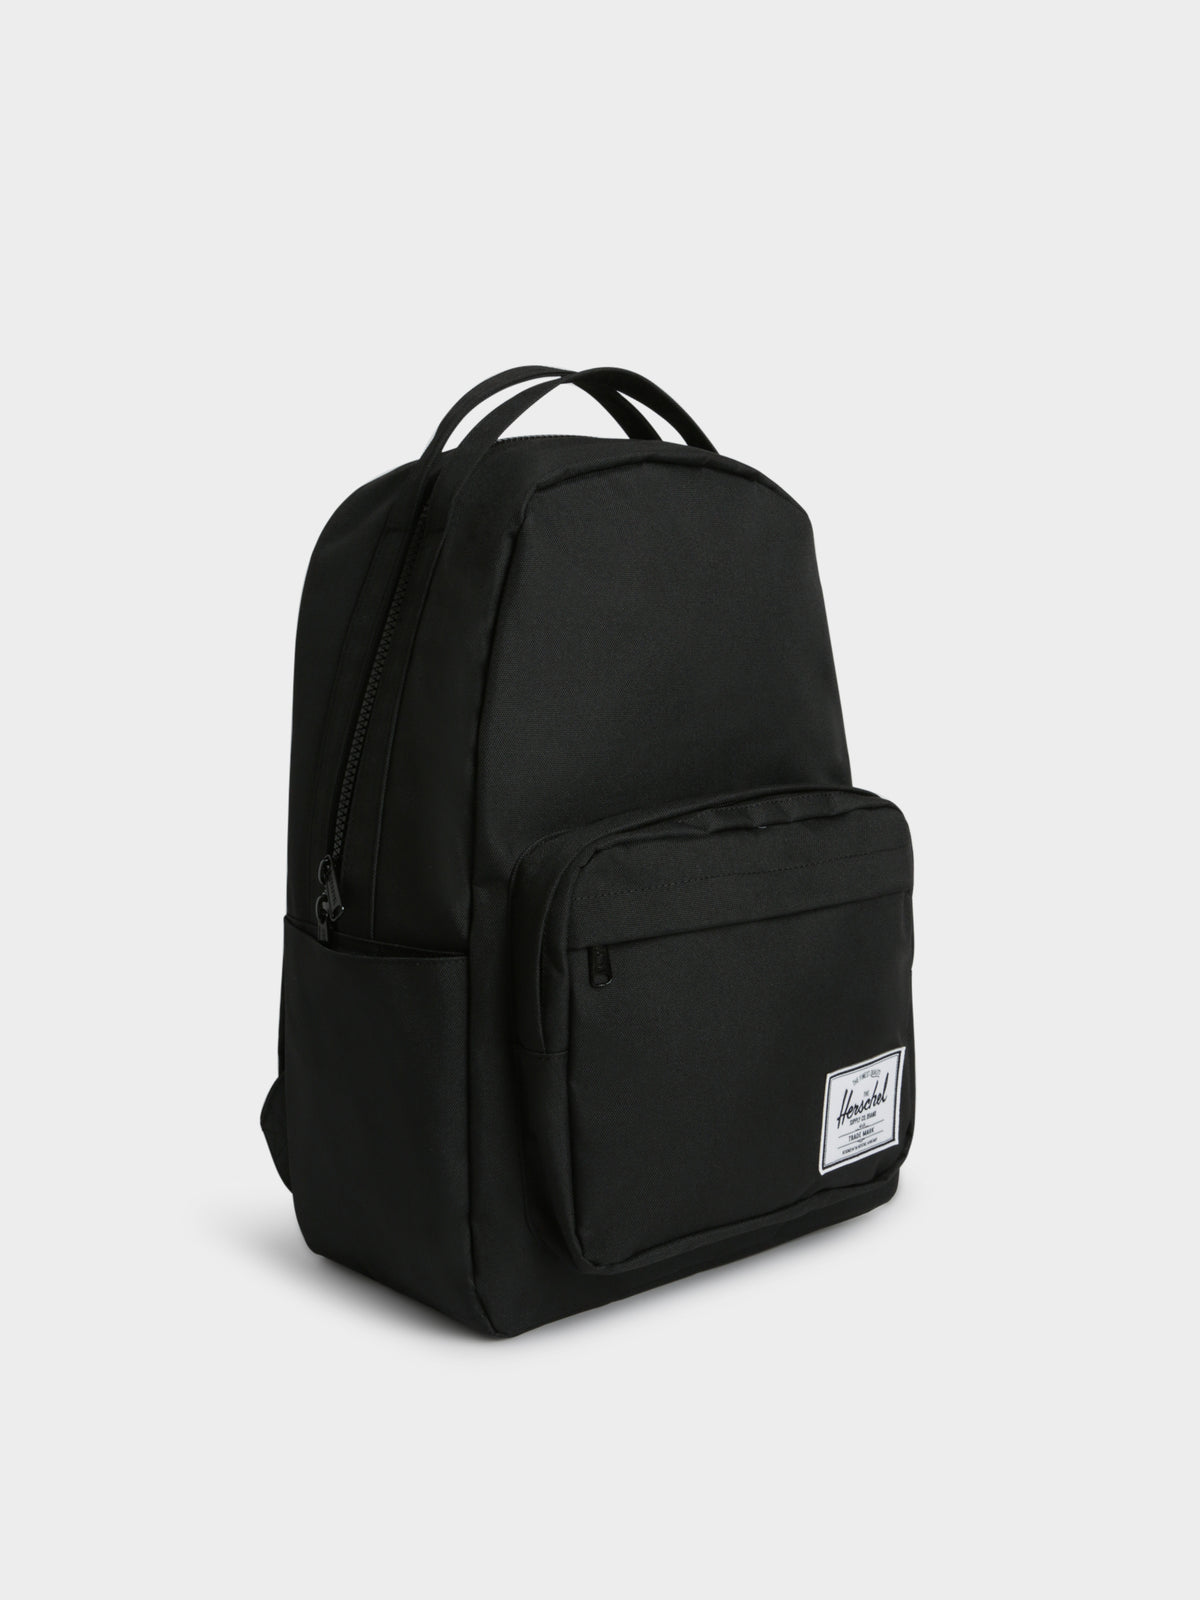 Miller Backpack in Black